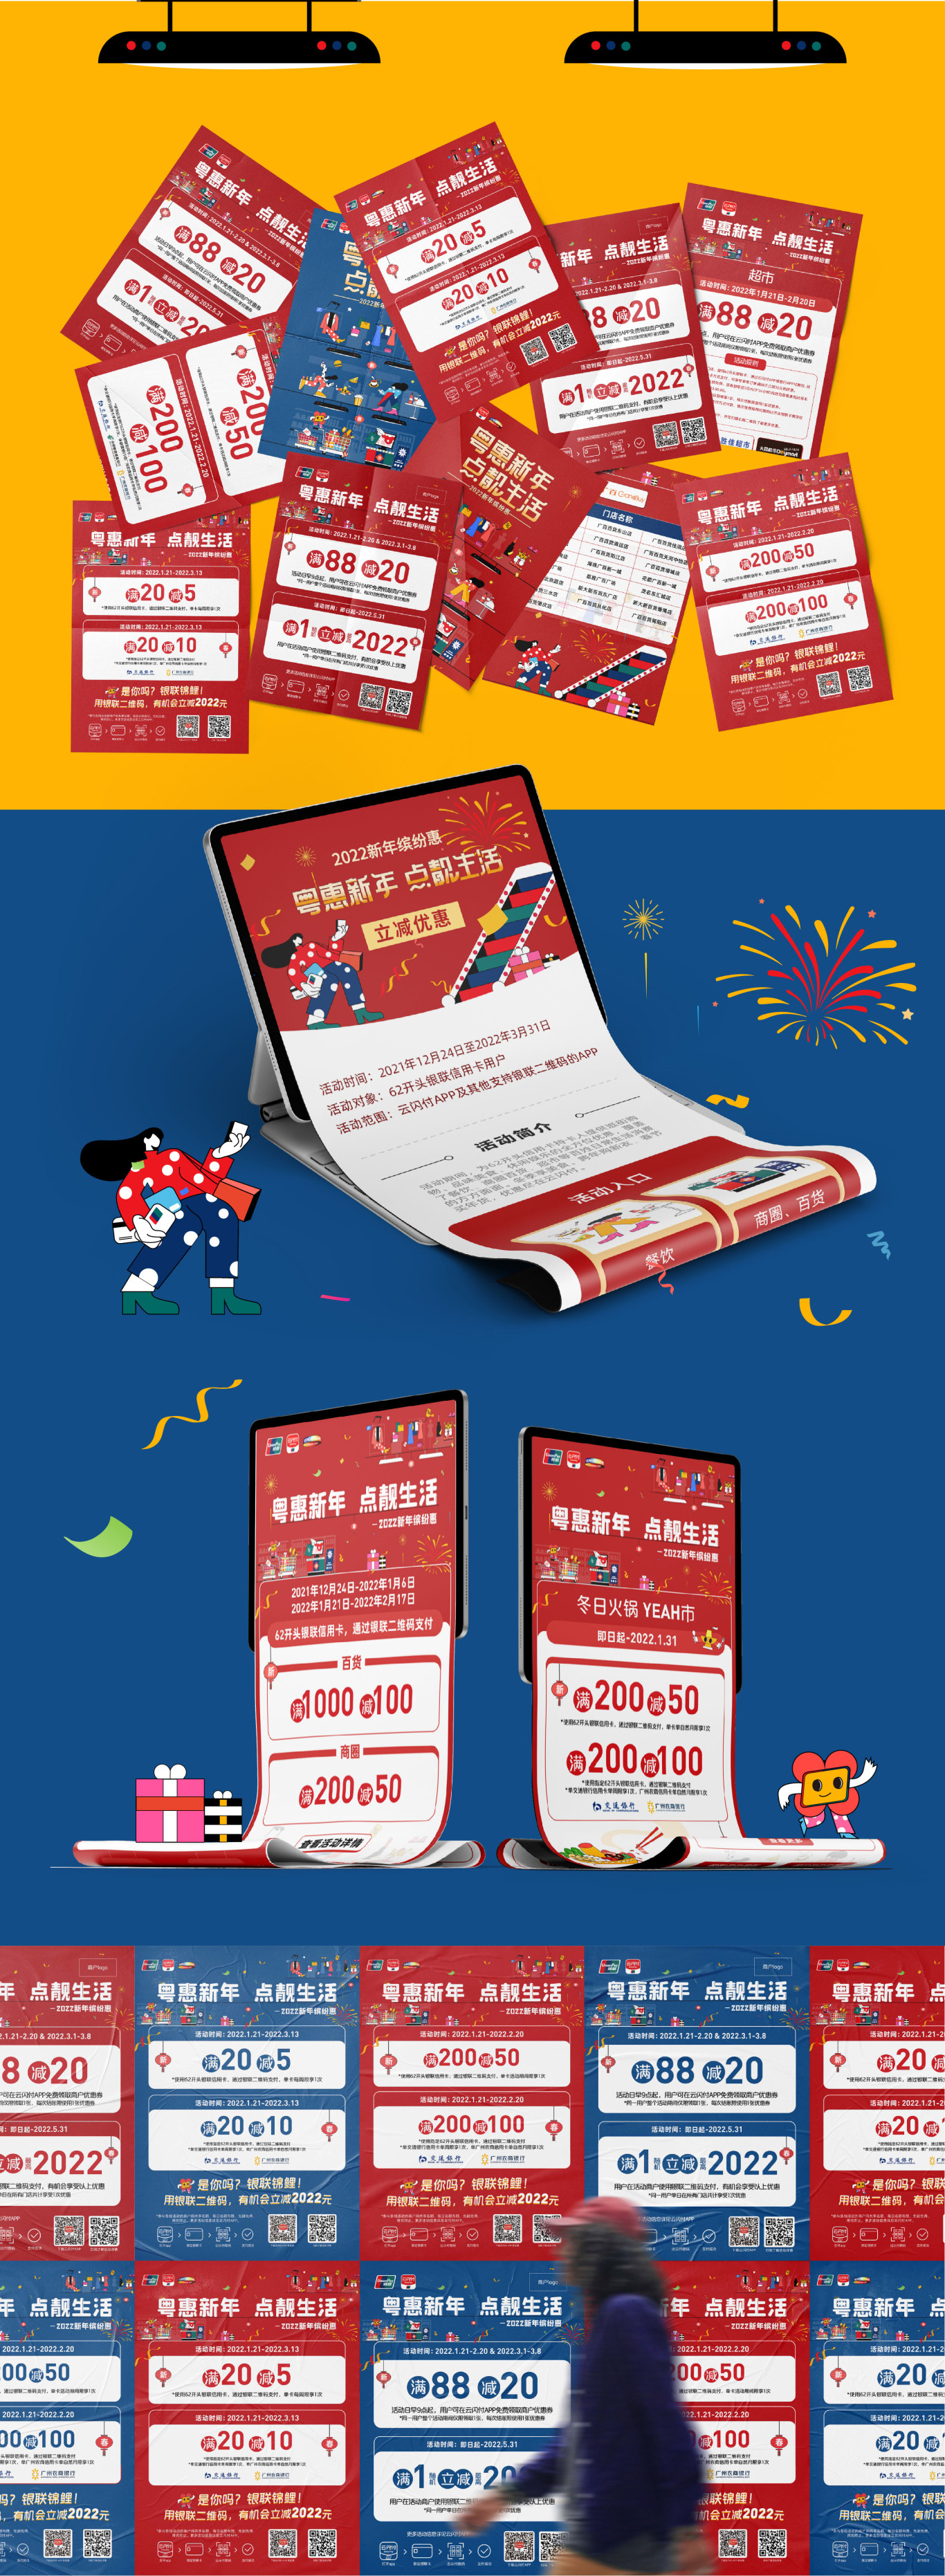 广东银联2022年跨年购物季活动一一粤惠新年，点靓生活图3